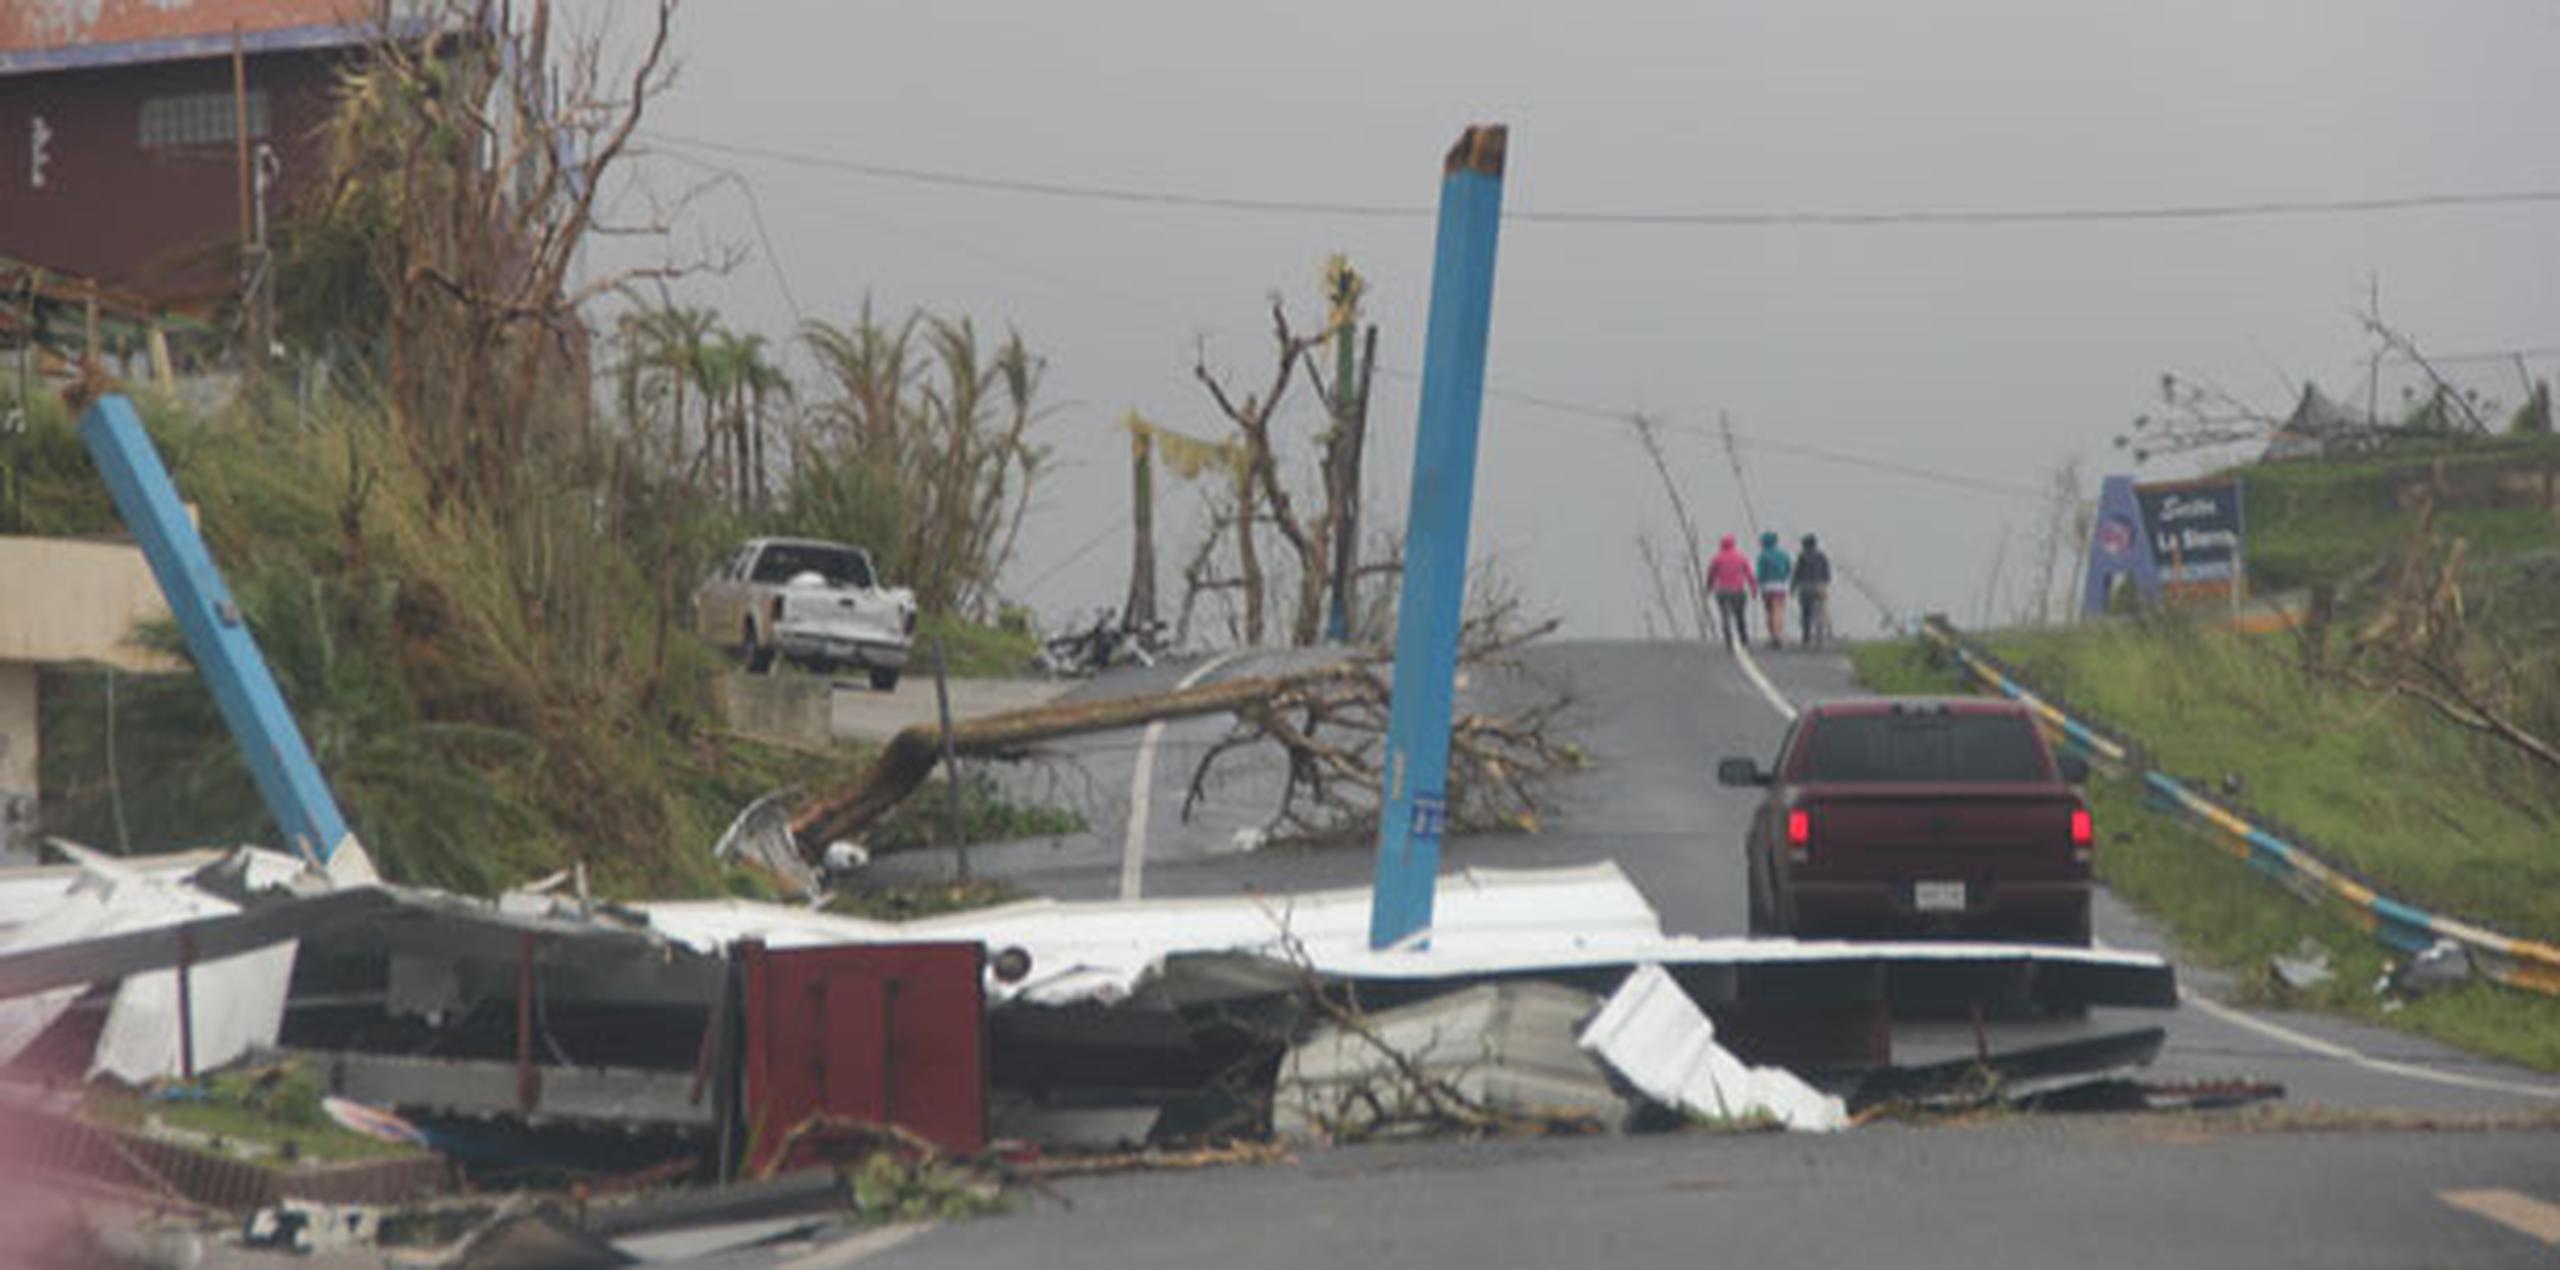 La cifra de muertes por el paso del huracán María por Puerto Rico en septiembre es motivo de controversia, ya que mientras el Gobierno mantiene 64 fallecidos como cifra oficial un reciente estudio estima que murieron 4,645 personas. (Archivo)